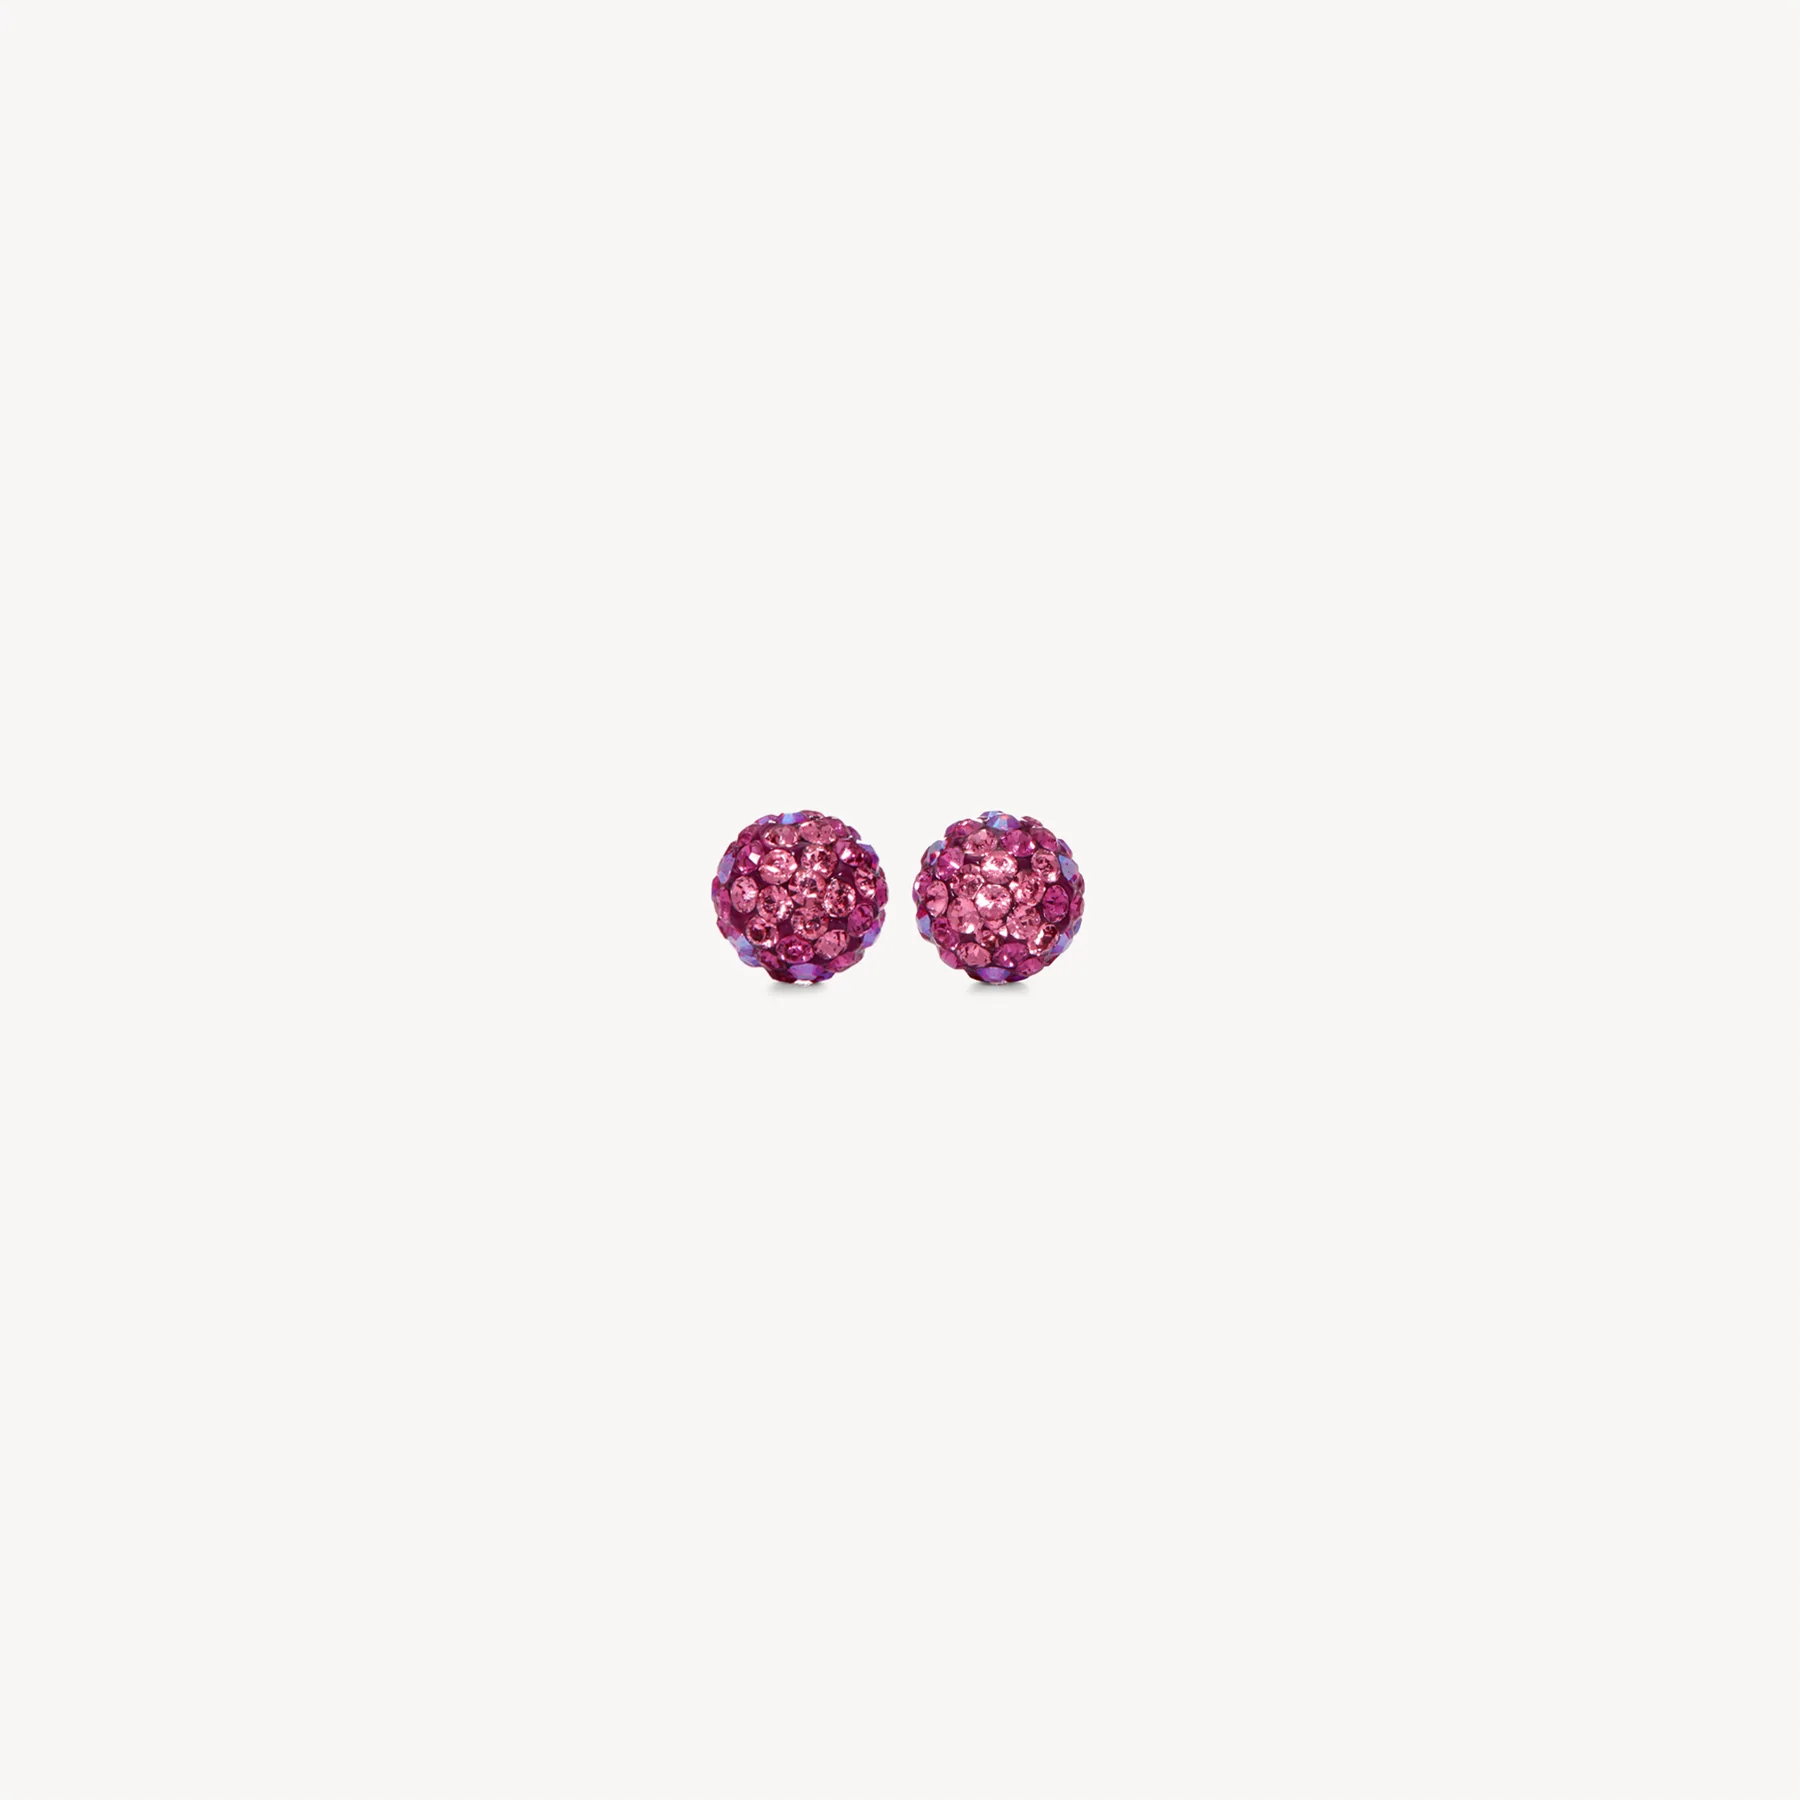 Hillberg & Berk Sparkle Ball Stud Earrings - Merry & Bright 8mm Accessories - Jewelry - Earrings by Hillberg & Berk | Grace the Boutique